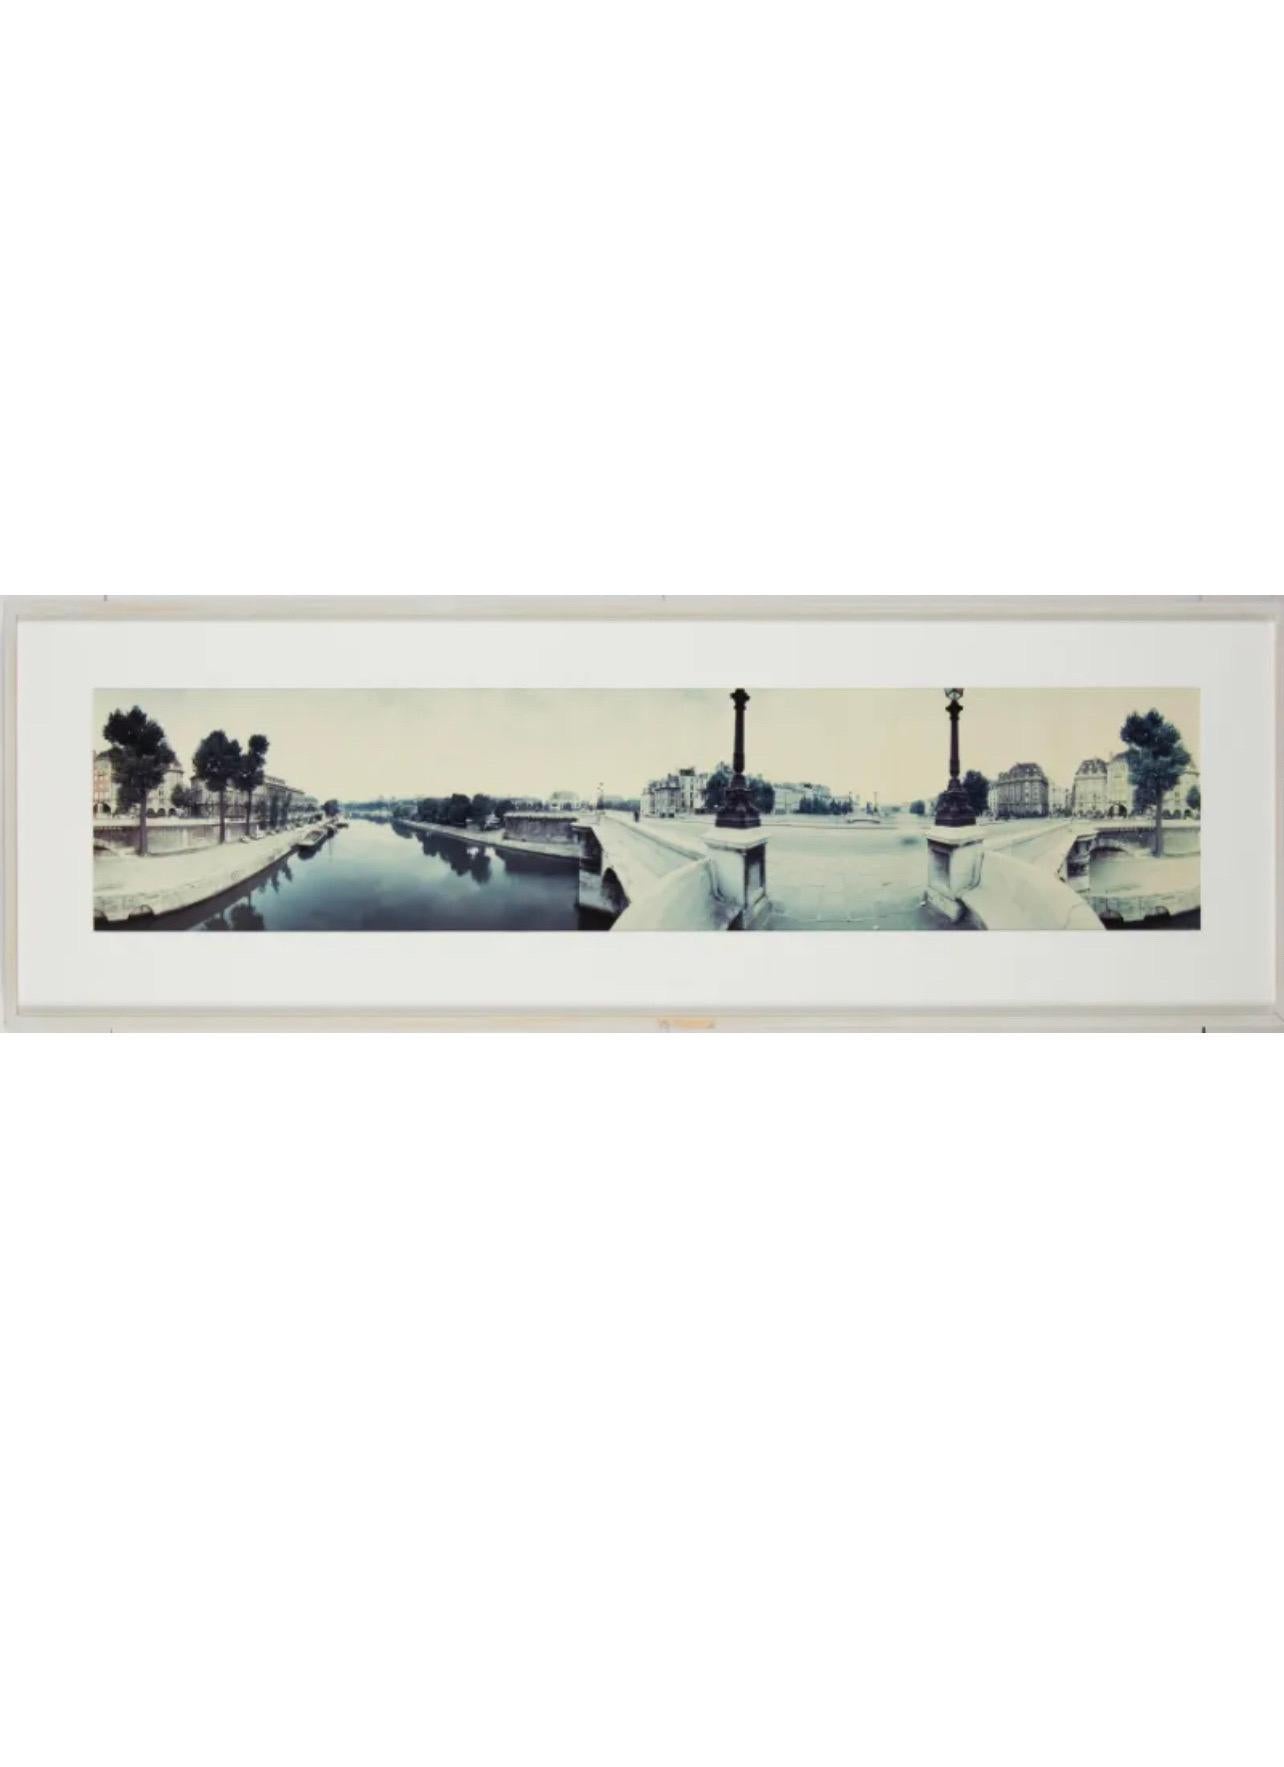 Kenneth Snelson (Amerikaner, 1927-2016). 
Fotografie, die ein Panorama der Seine und der Brücken in Paris, Frankreich, zeigt
Handsigniert, datiert 1985,  nummeriert 5/6, unten rechts.

Provenienz: Sammlung von Bruce Dayton & Ruth Stricker Dayton,